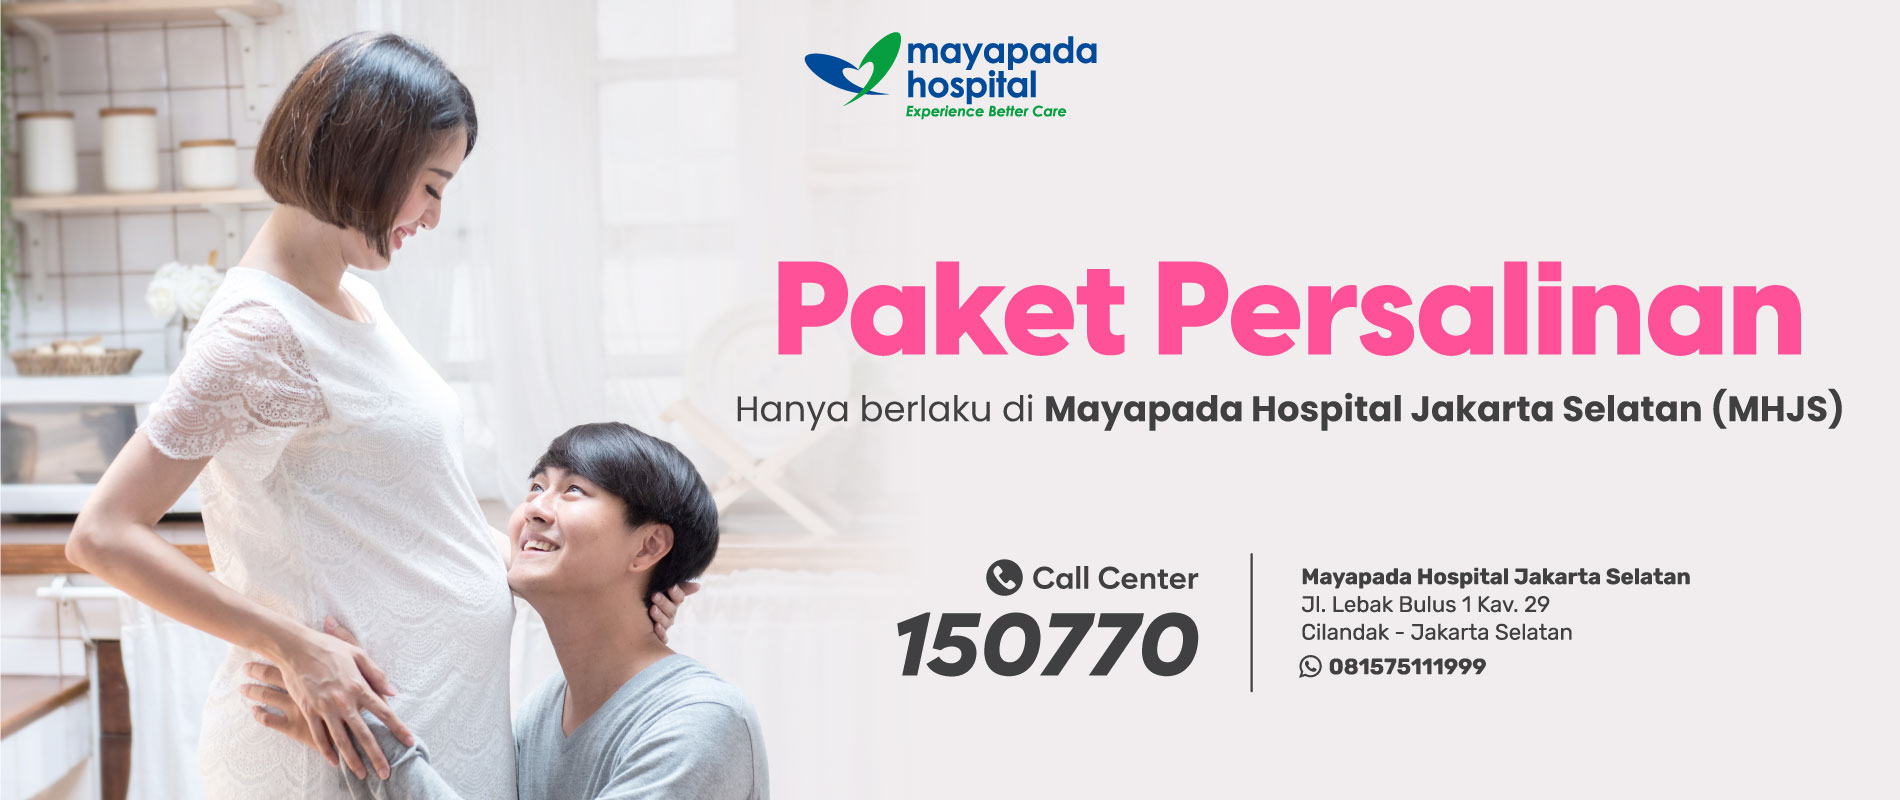 Paket Persalinan di Mayapada Hospital Jakarta Selatan (MHJS) IMG